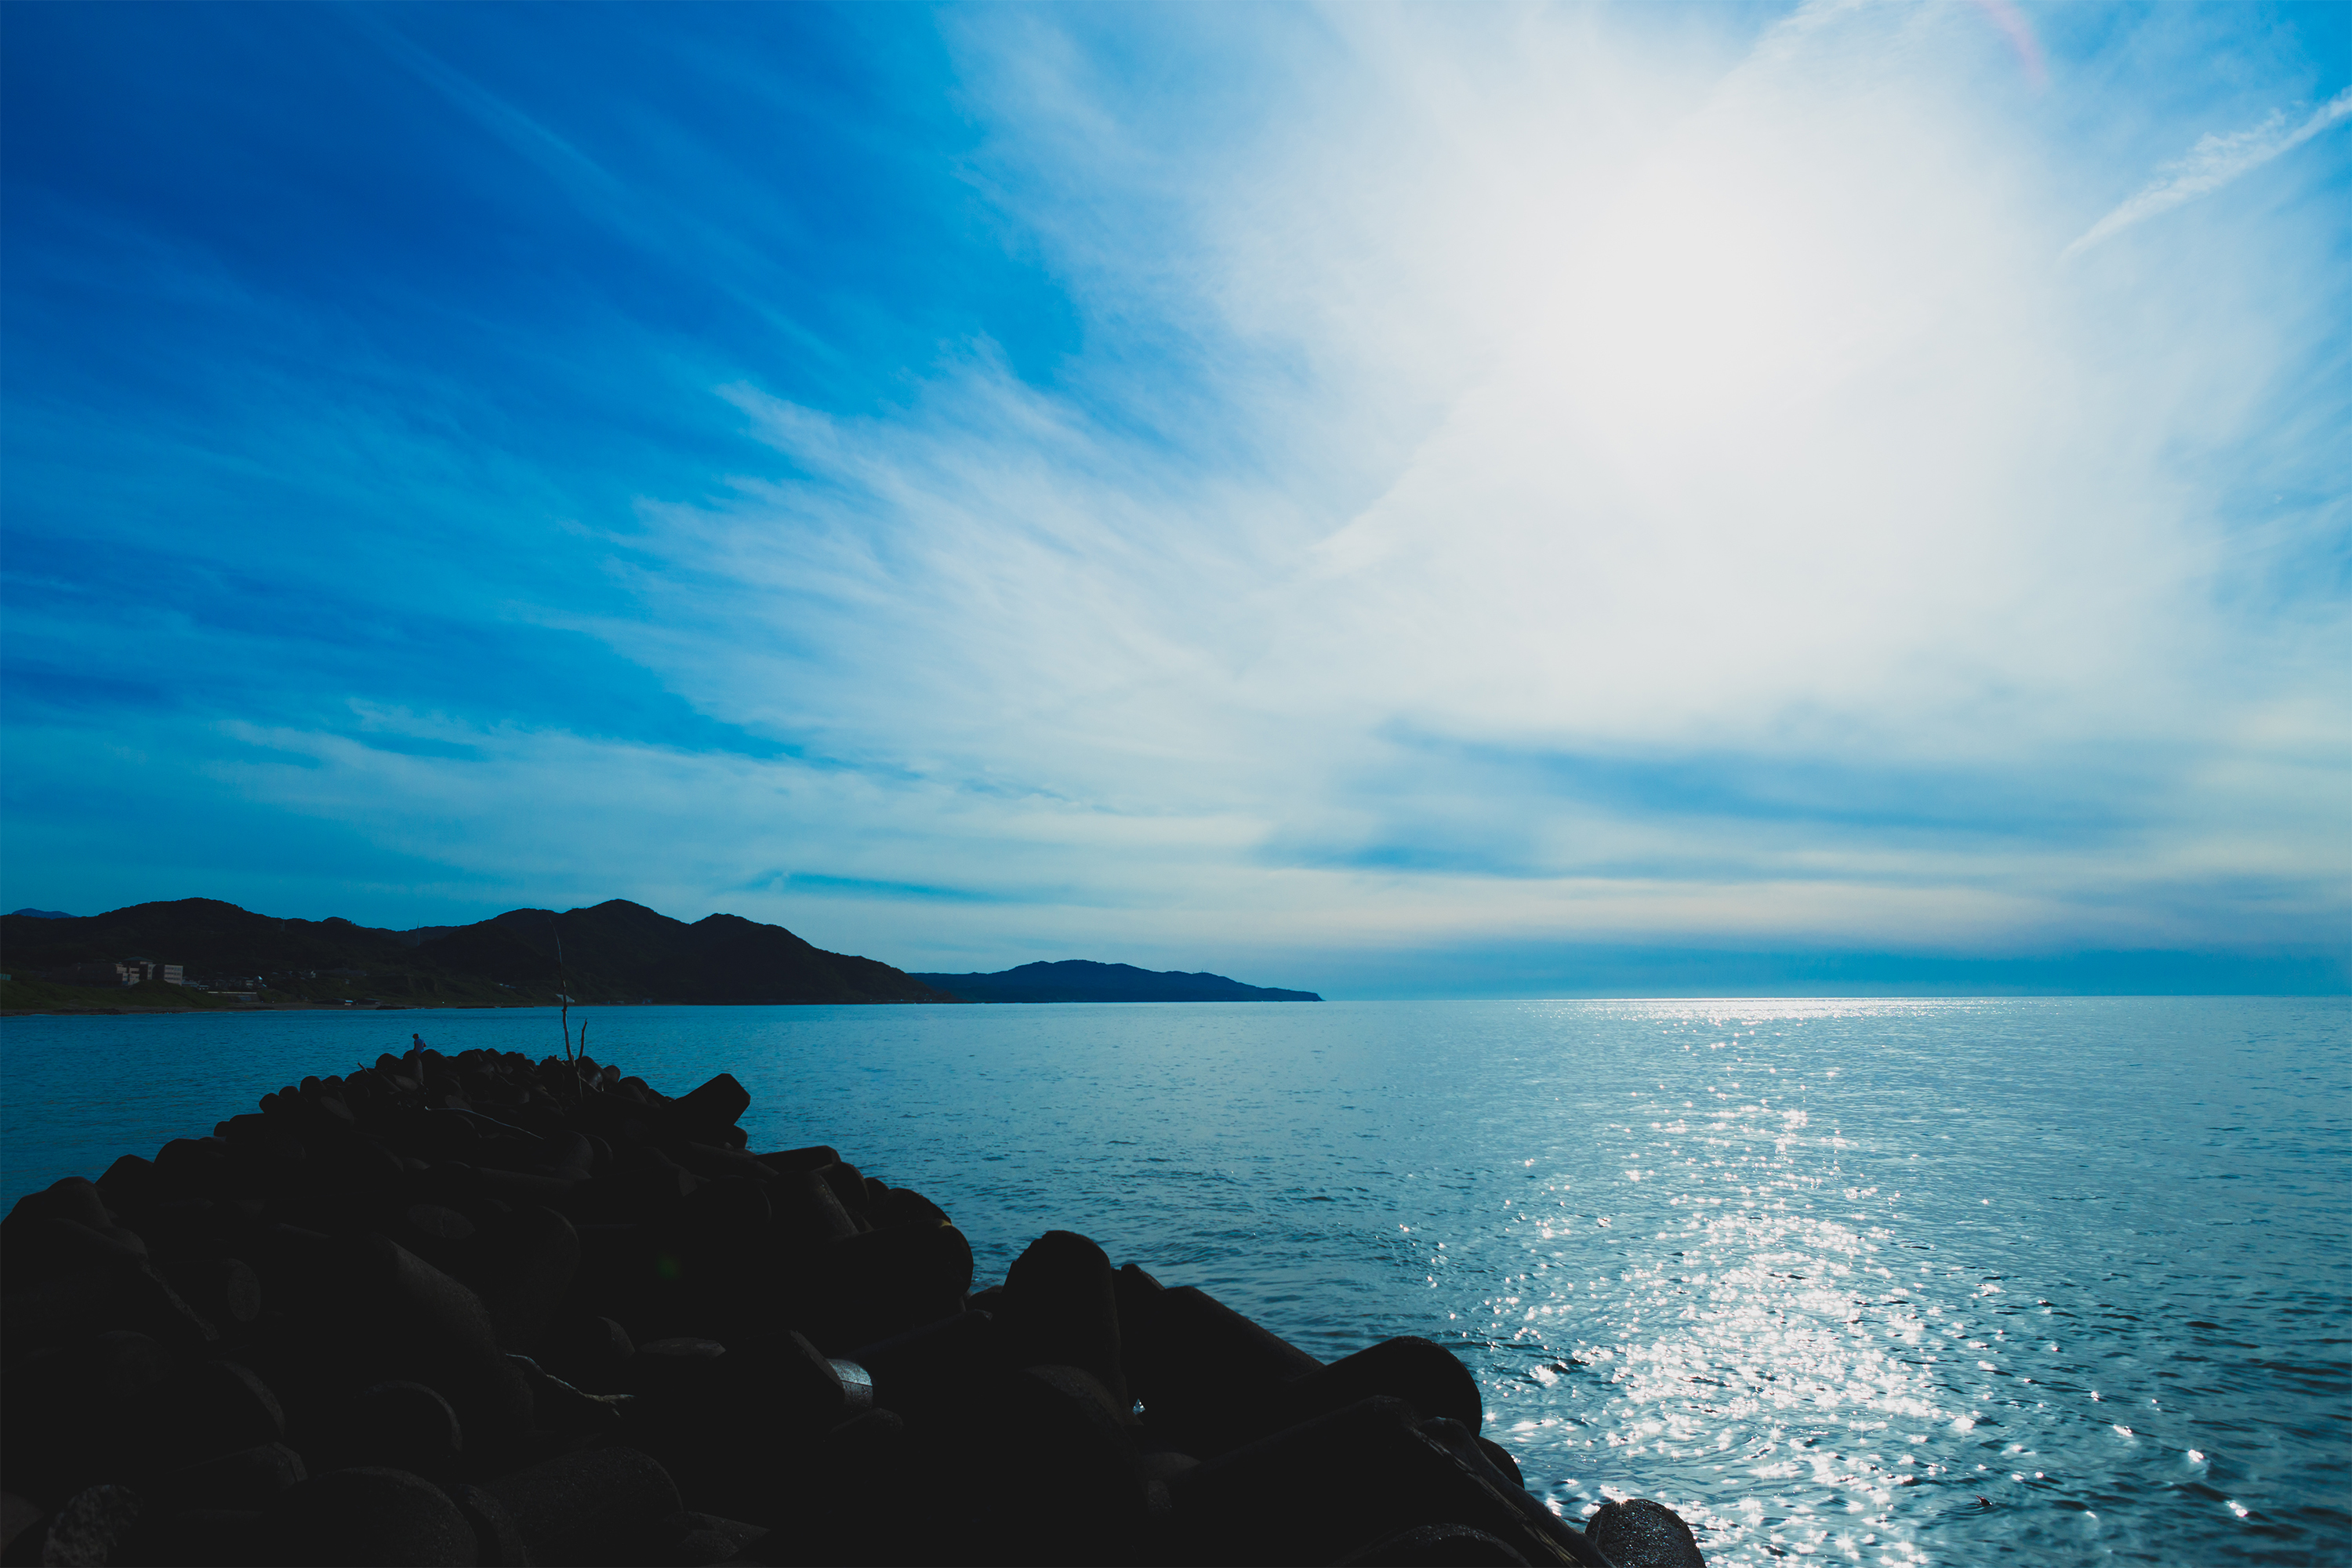 太陽光が海面にキラキラ反射している風景 無料の高画質フリー写真素材 イメージズラボ